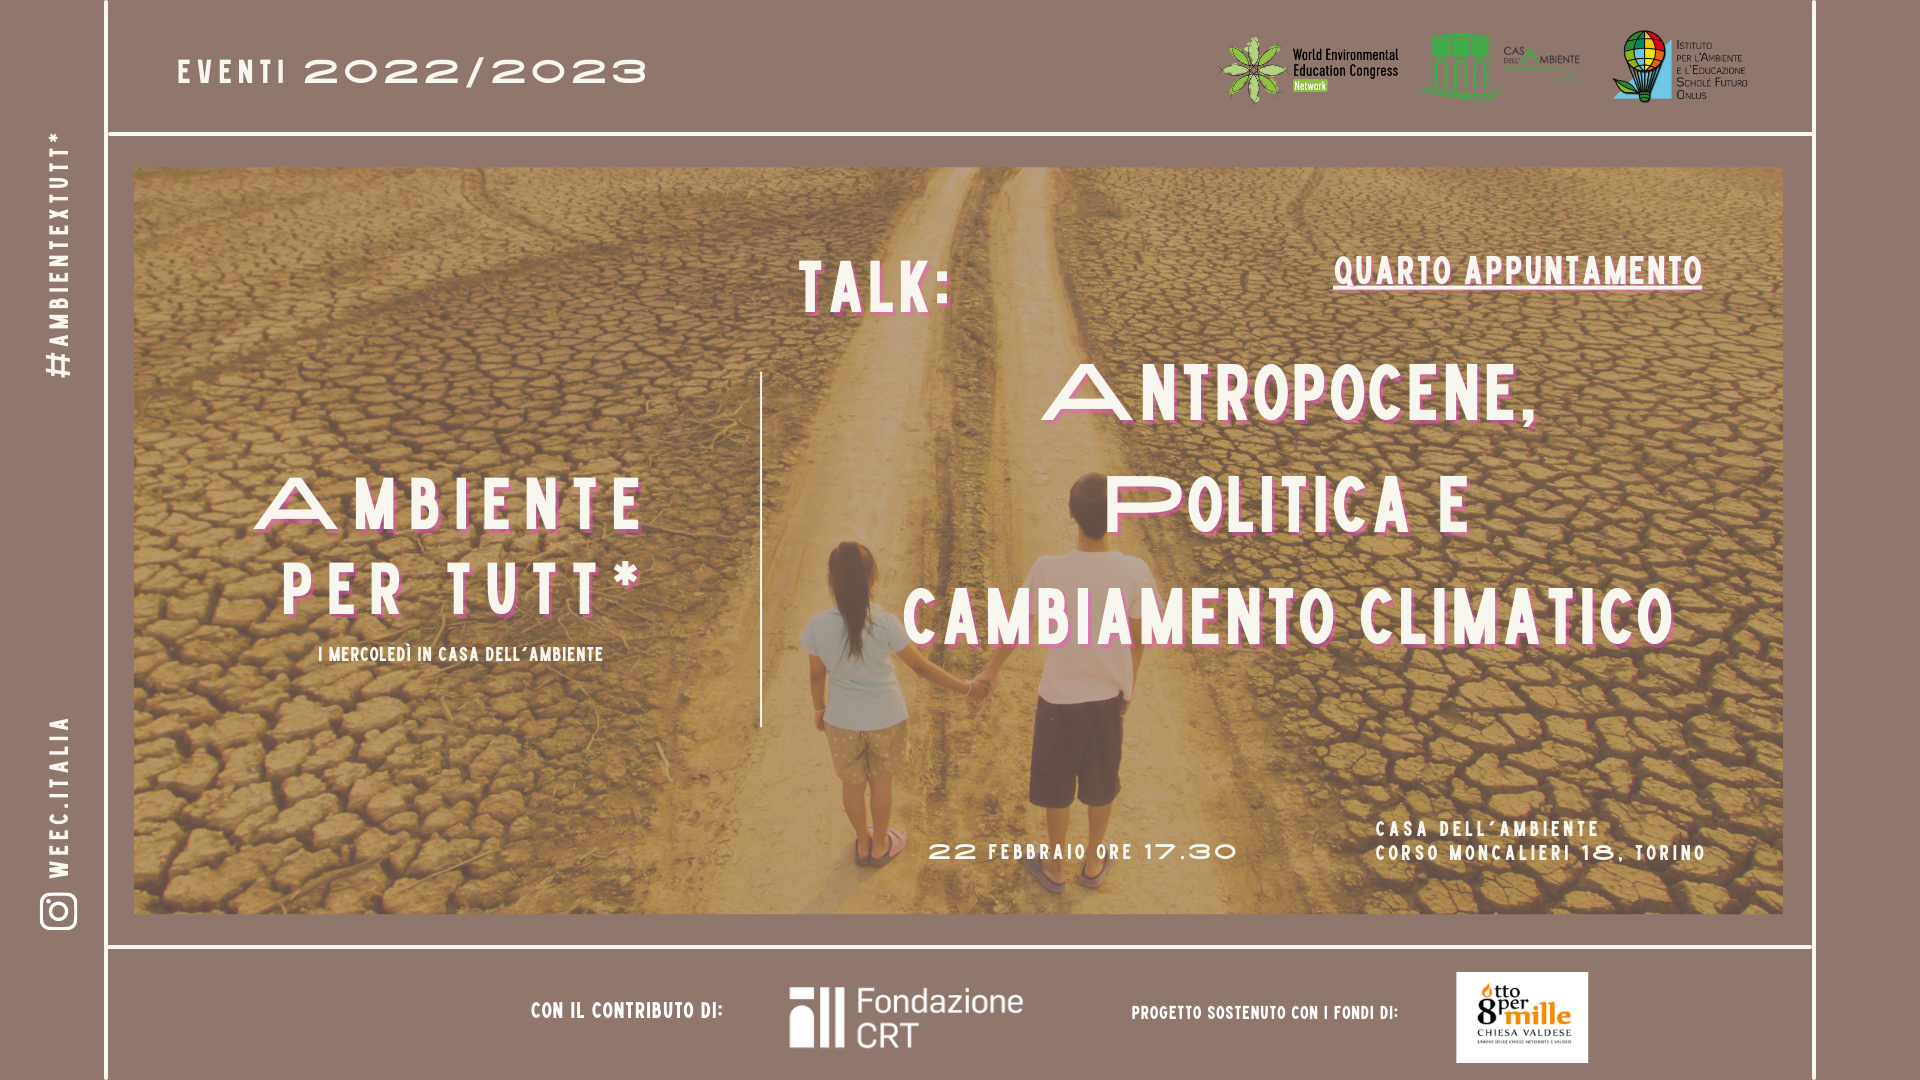 Antropocene, Politica e Emergenza Climatica: il quarto incontro di Ambiente per Tutt*